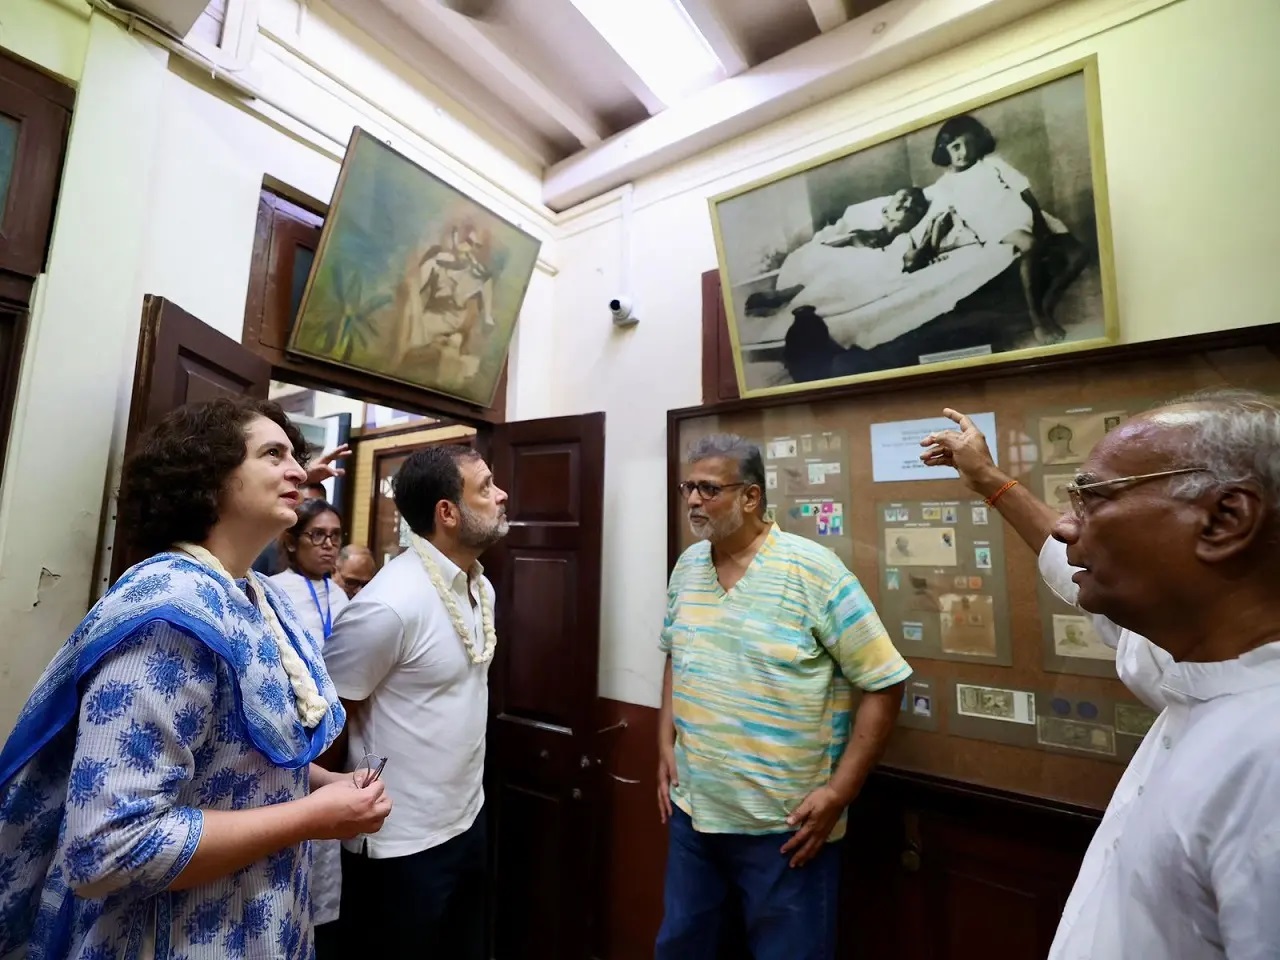 राहुल गांधी मुंबई में महात्मा गांधी के घर मणि भवन से अगस्त क्रांति मैदान तक `न्याय संकल्प पदयात्रा` निकालने के बाद यहां एक हॉल में एक सभा को संबोधित कर रहे थे, जहां 1942 में भारत के स्वतंत्रता संग्राम के दौरान भारत छोड़ो आंदोलन शुरू हुआ था.